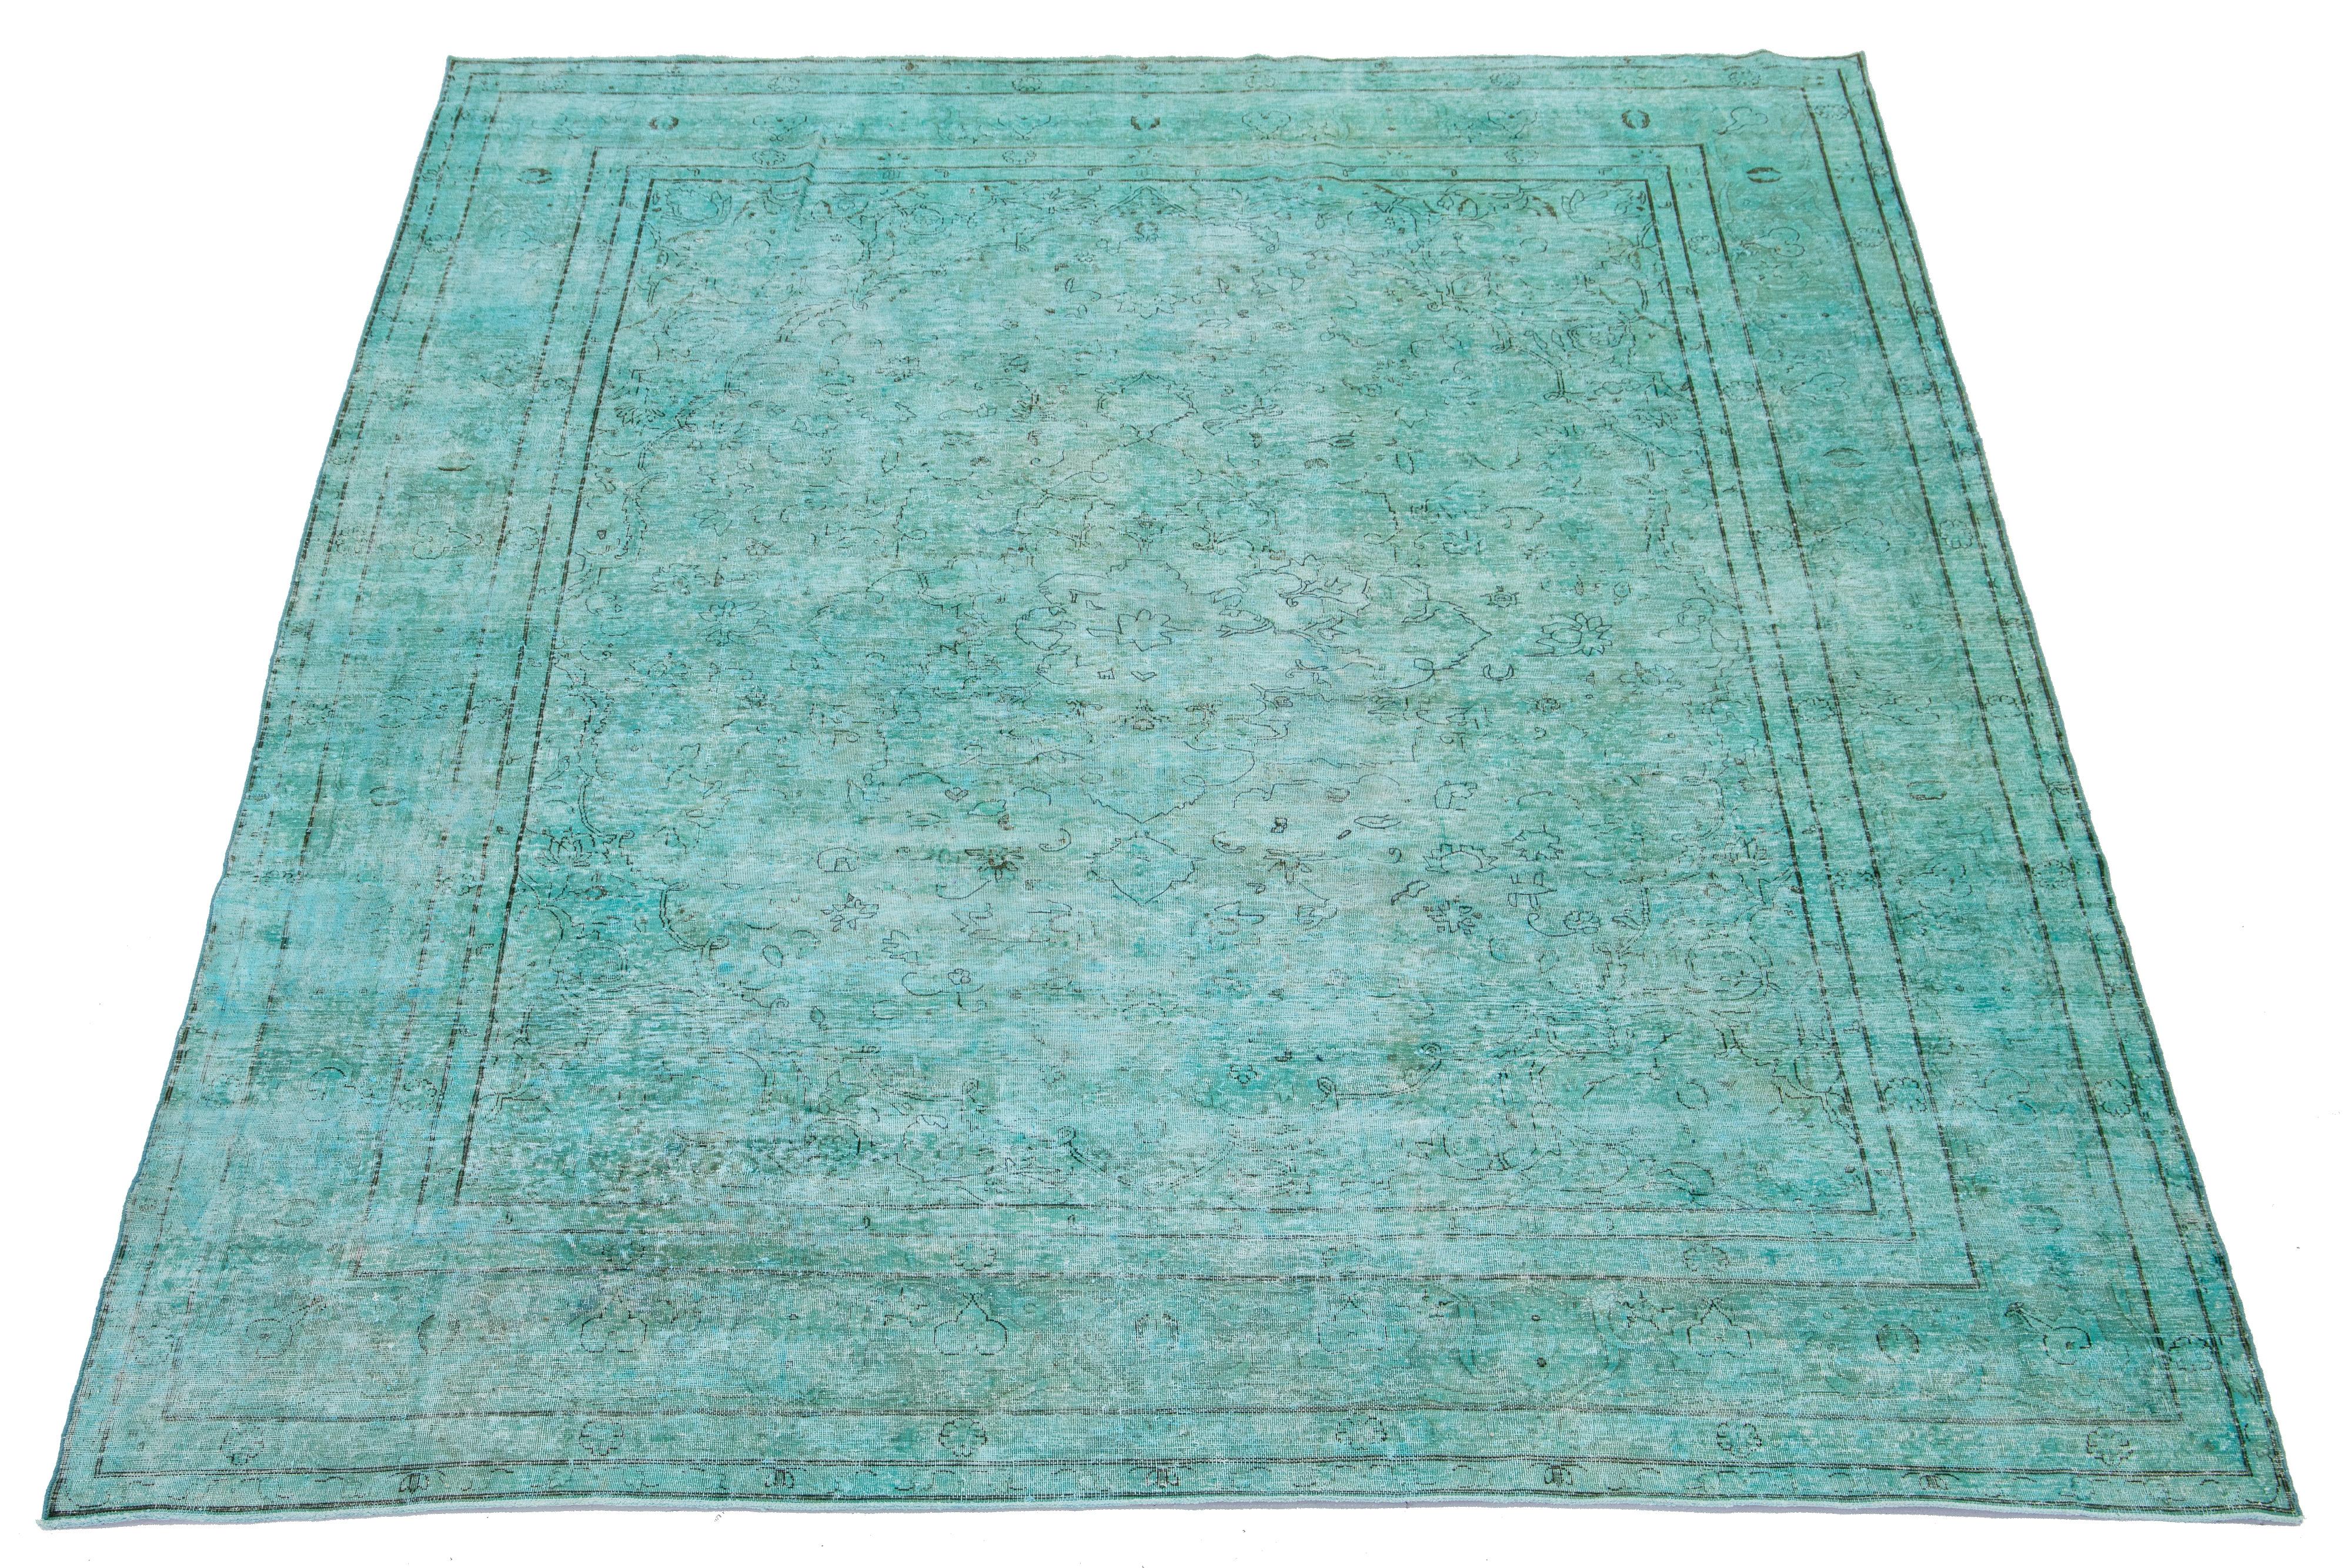 Il s'agit d'un ancien tapis persan en laine noué à la main avec un champ turquoise. Il présente un design floral sur toute sa surface avec des accents gris.

Ce tapis mesure 8'5'' x 11'1